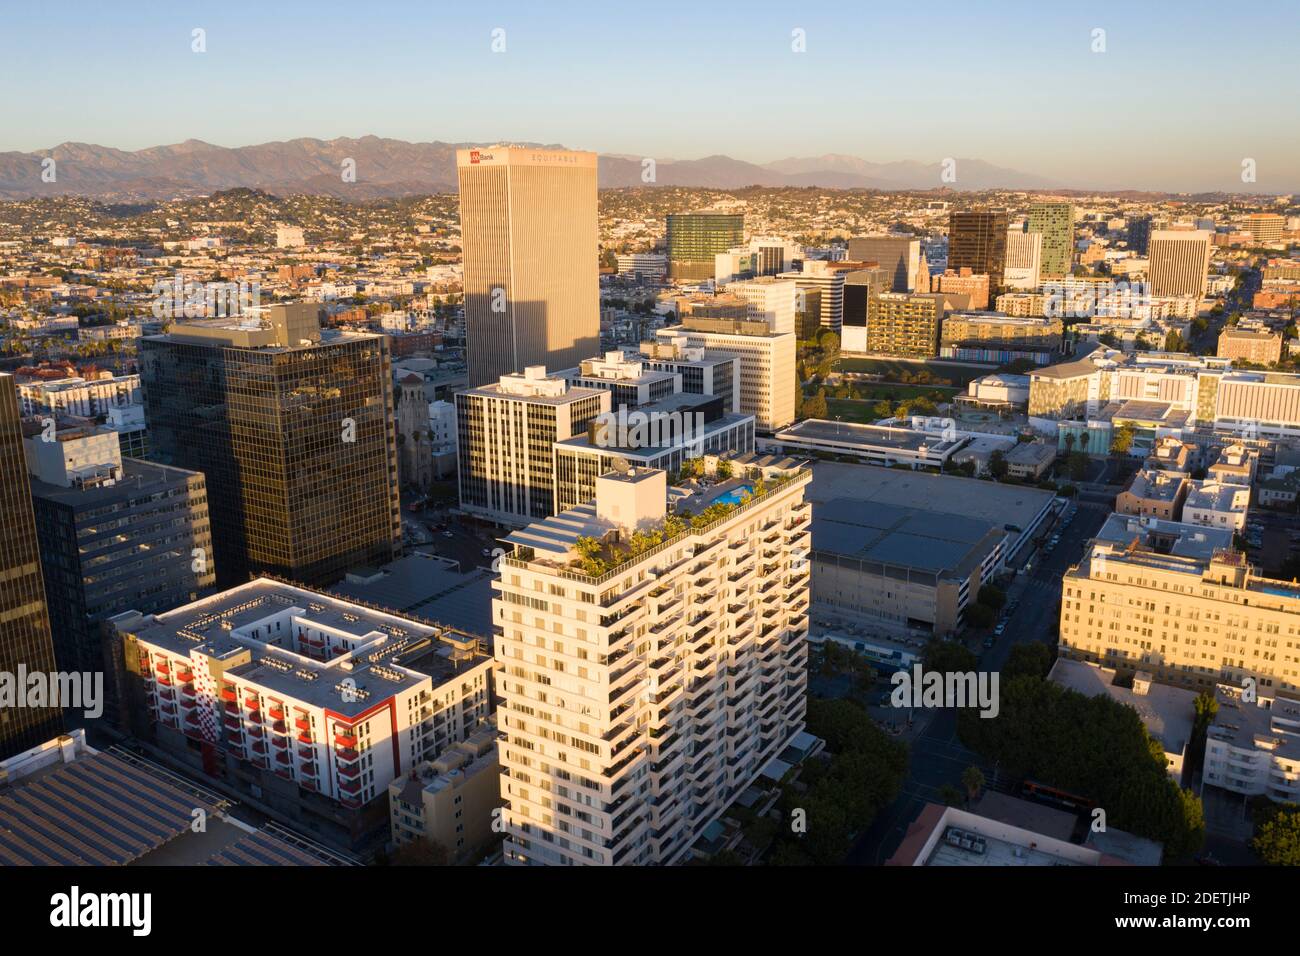 Vue aérienne au-dessus de Koretown et du couloir urbain dense Wilshire Boulevard dans le centre de Los Angeles, Californie Banque D'Images